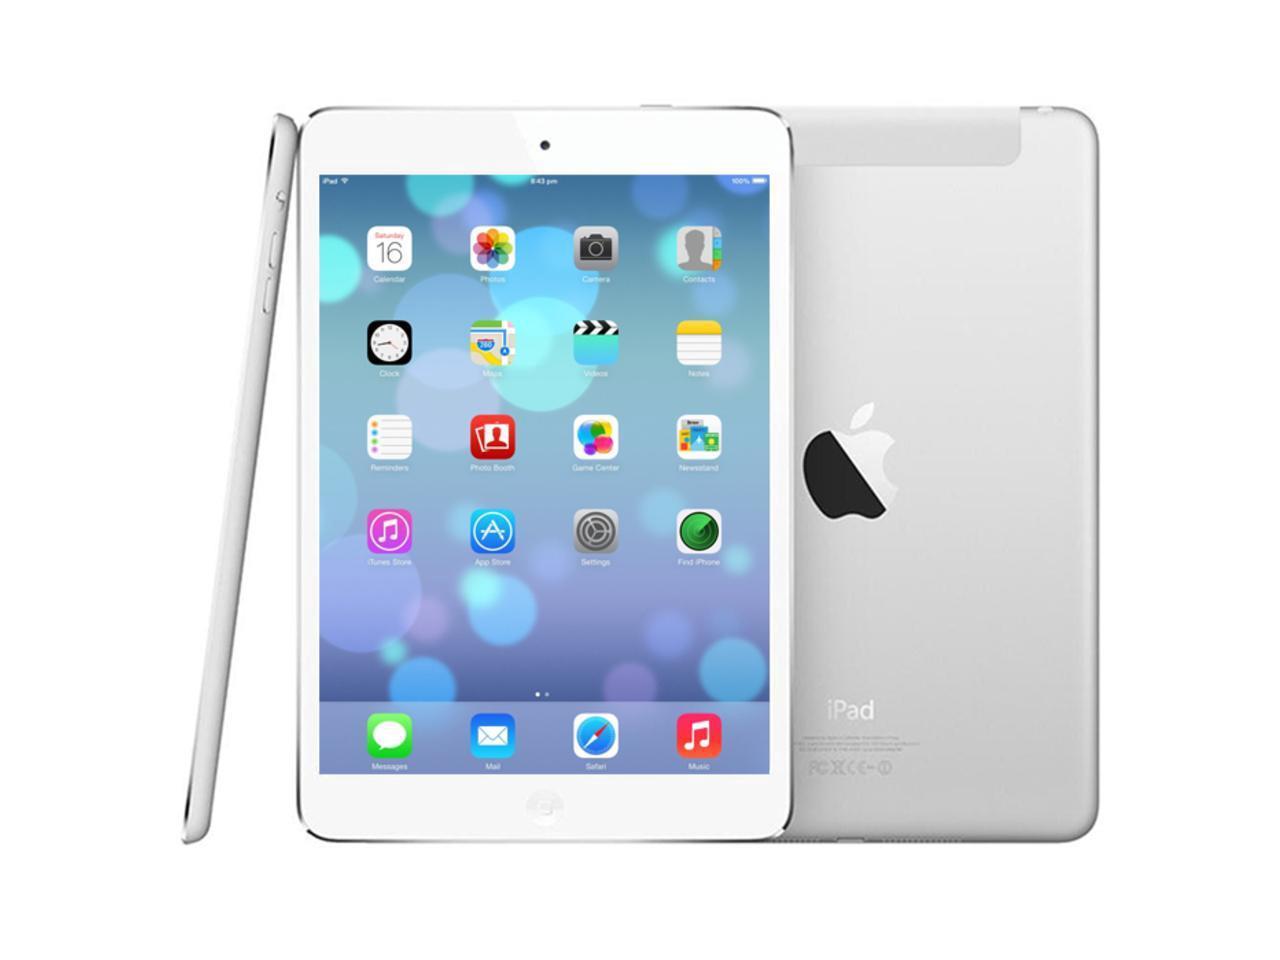 Apple iPad mini 4 (128GB, Wi-Fi, Silver) - MK9P2LL/A - Newegg.com